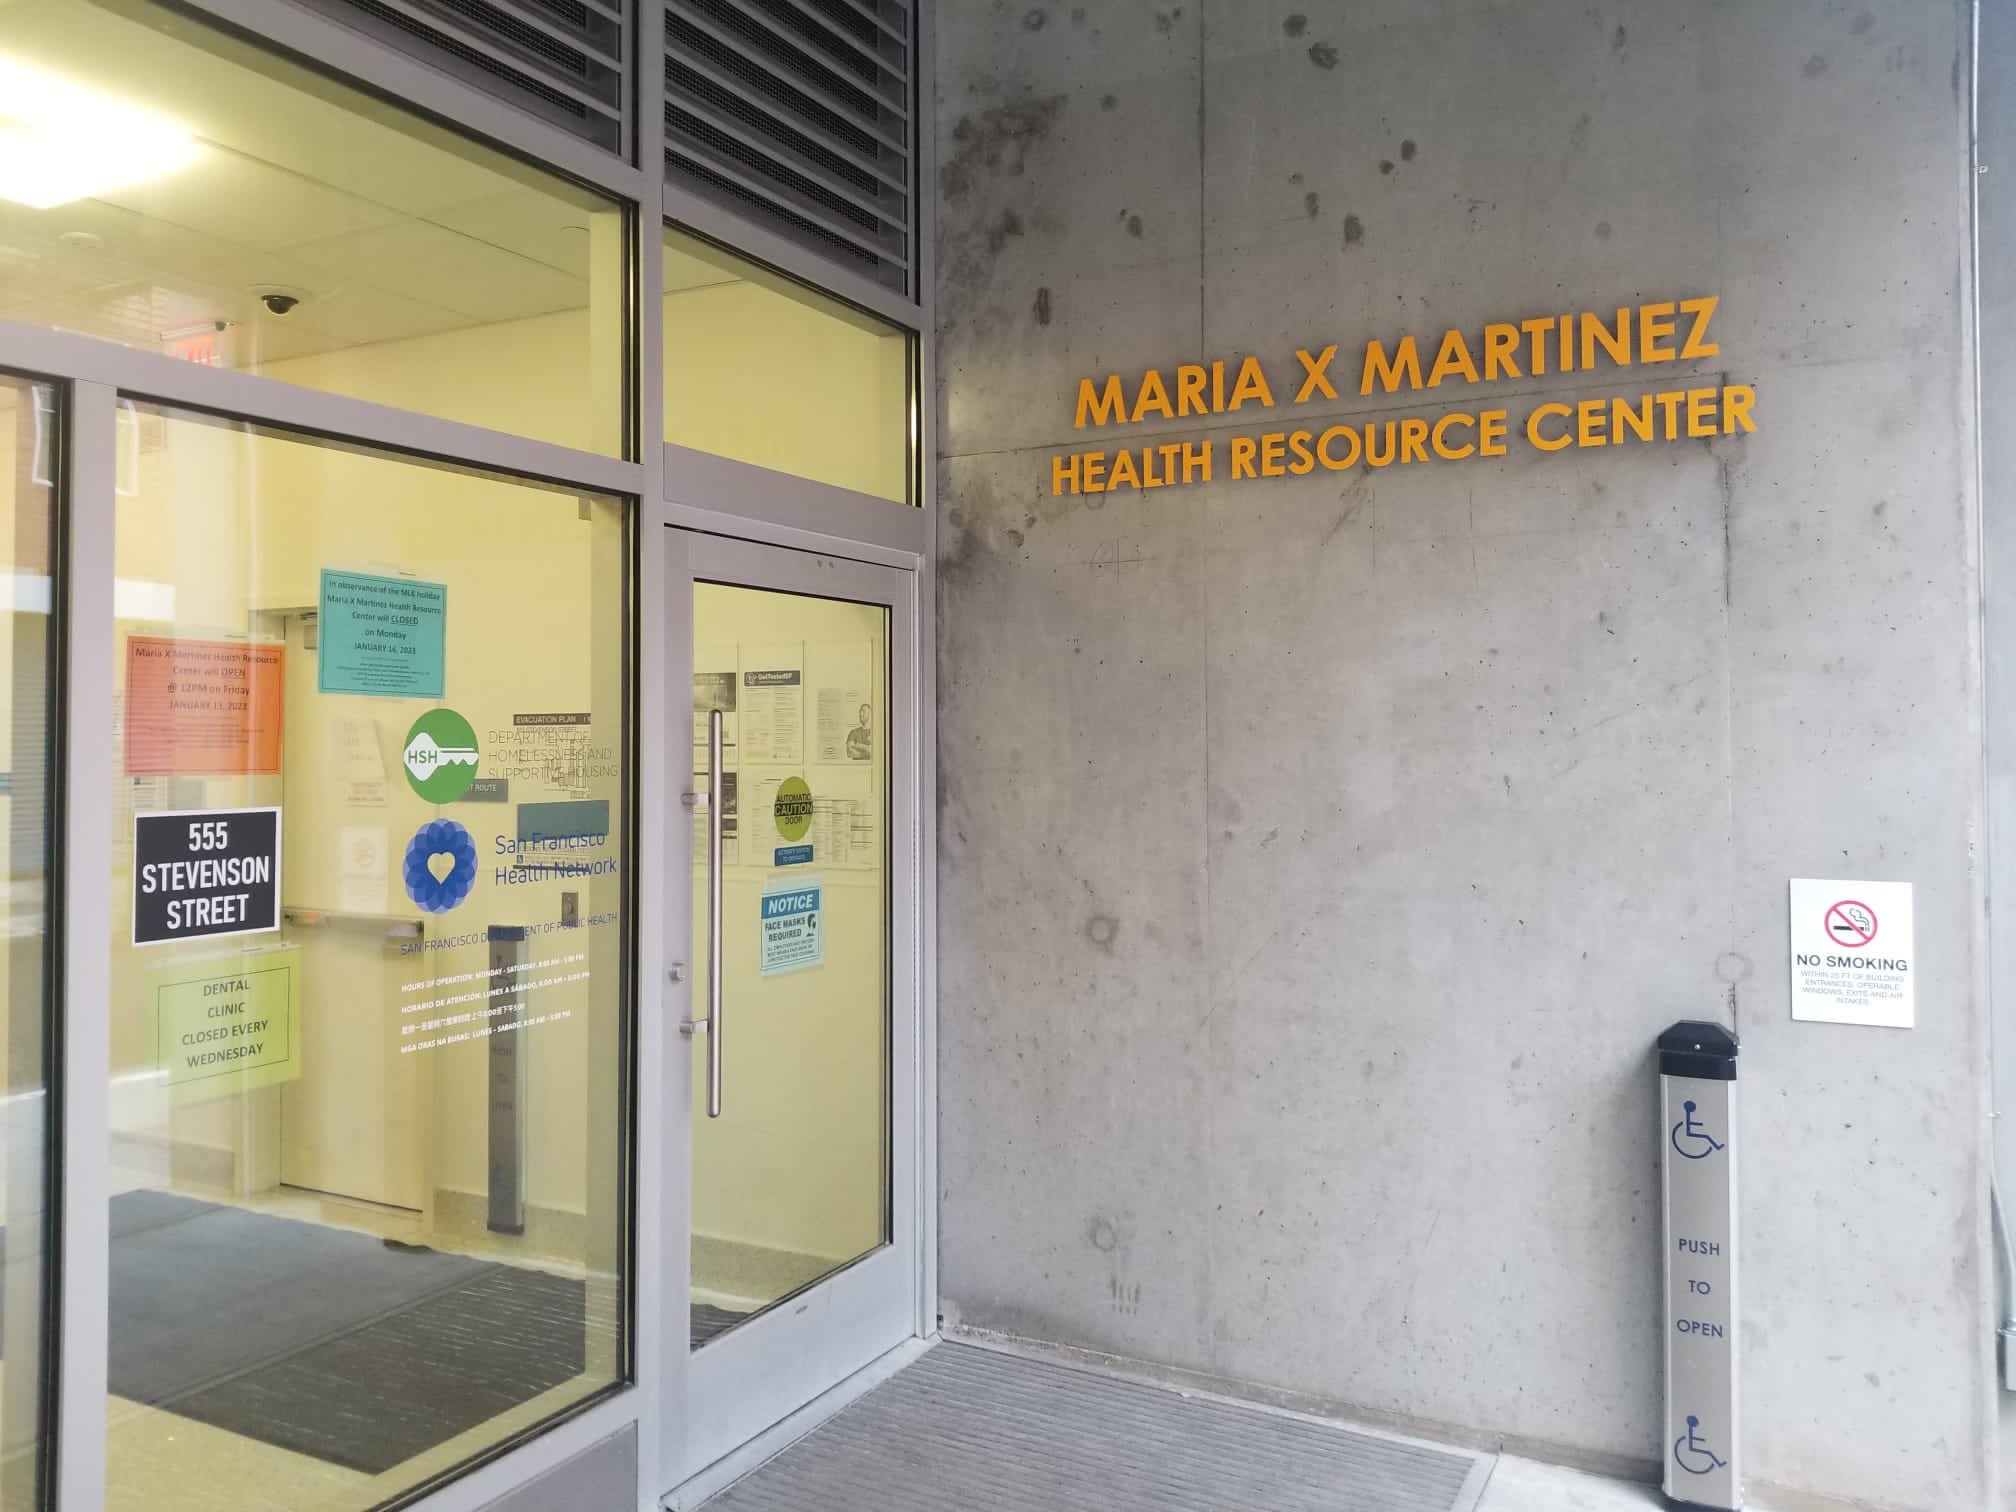 Maria X Martinez Heath Resource Center